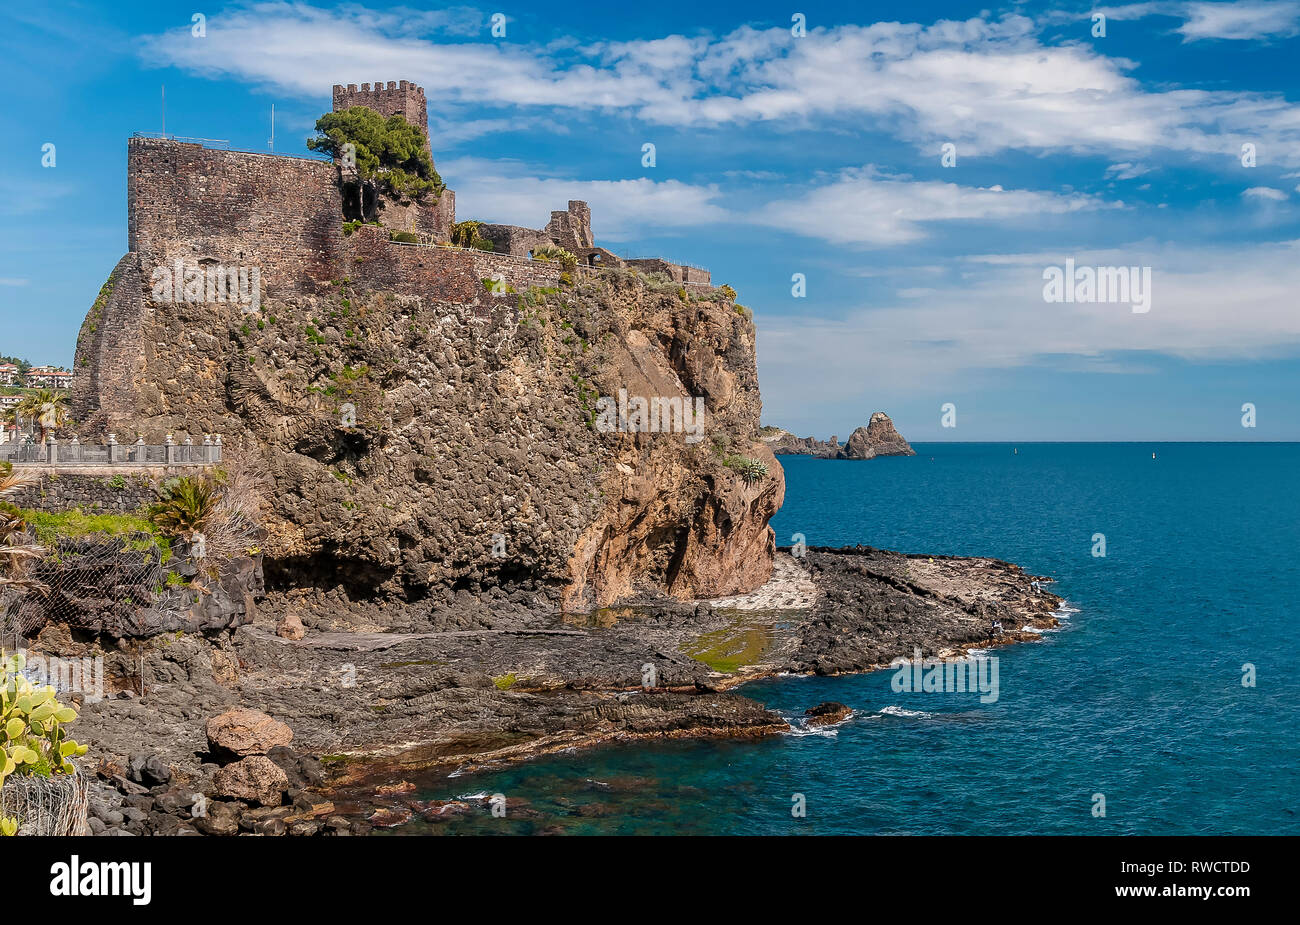 Bellissima vista di Aci Castello affacciato sul mare in una bella giornata di sole, Catania, Sicilia, Italia Foto Stock